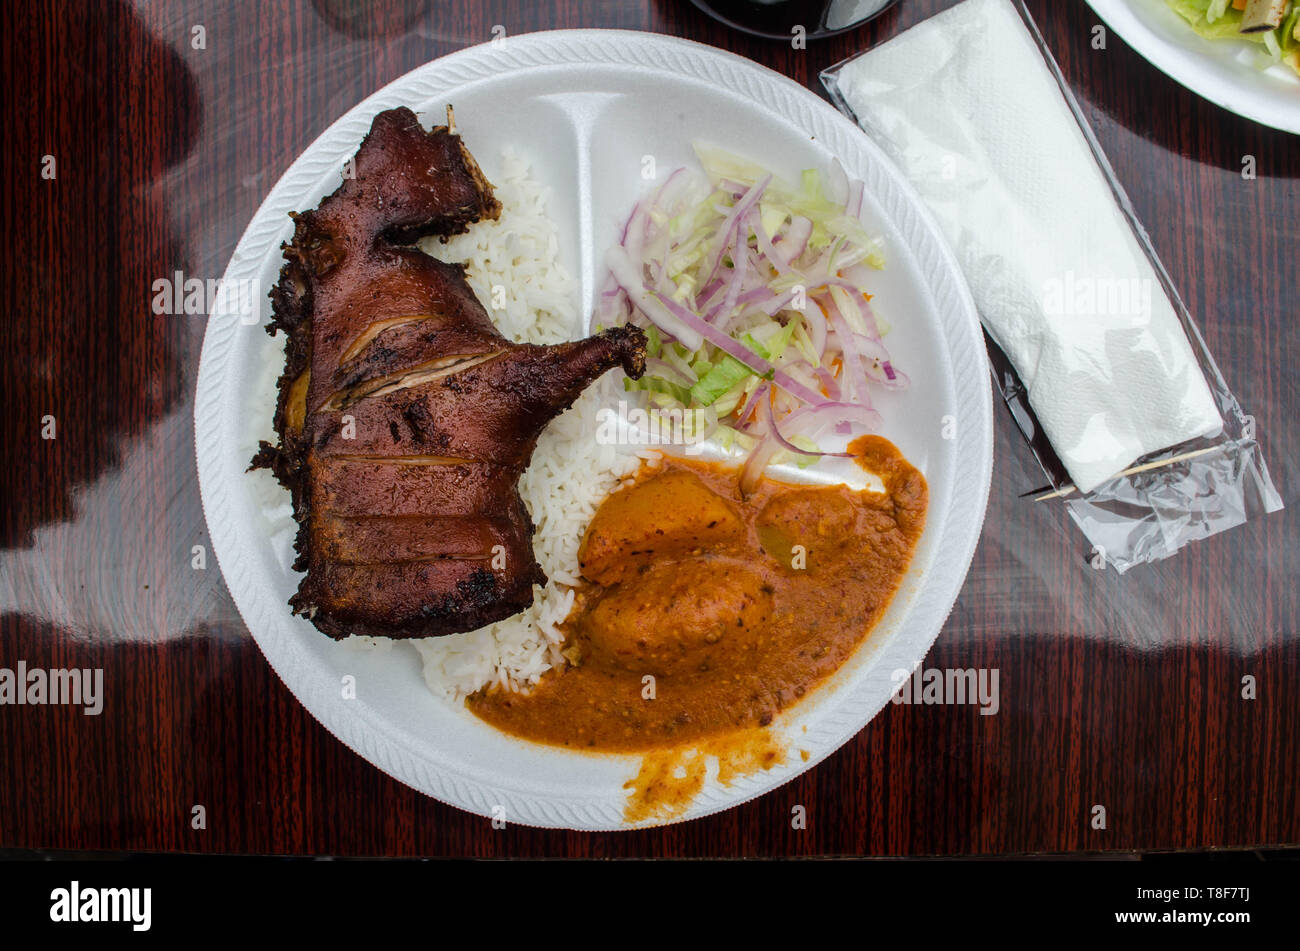 Teller mit gerösteten Meerschweinchen in Peru Restaurants serviert wird. Stockfoto